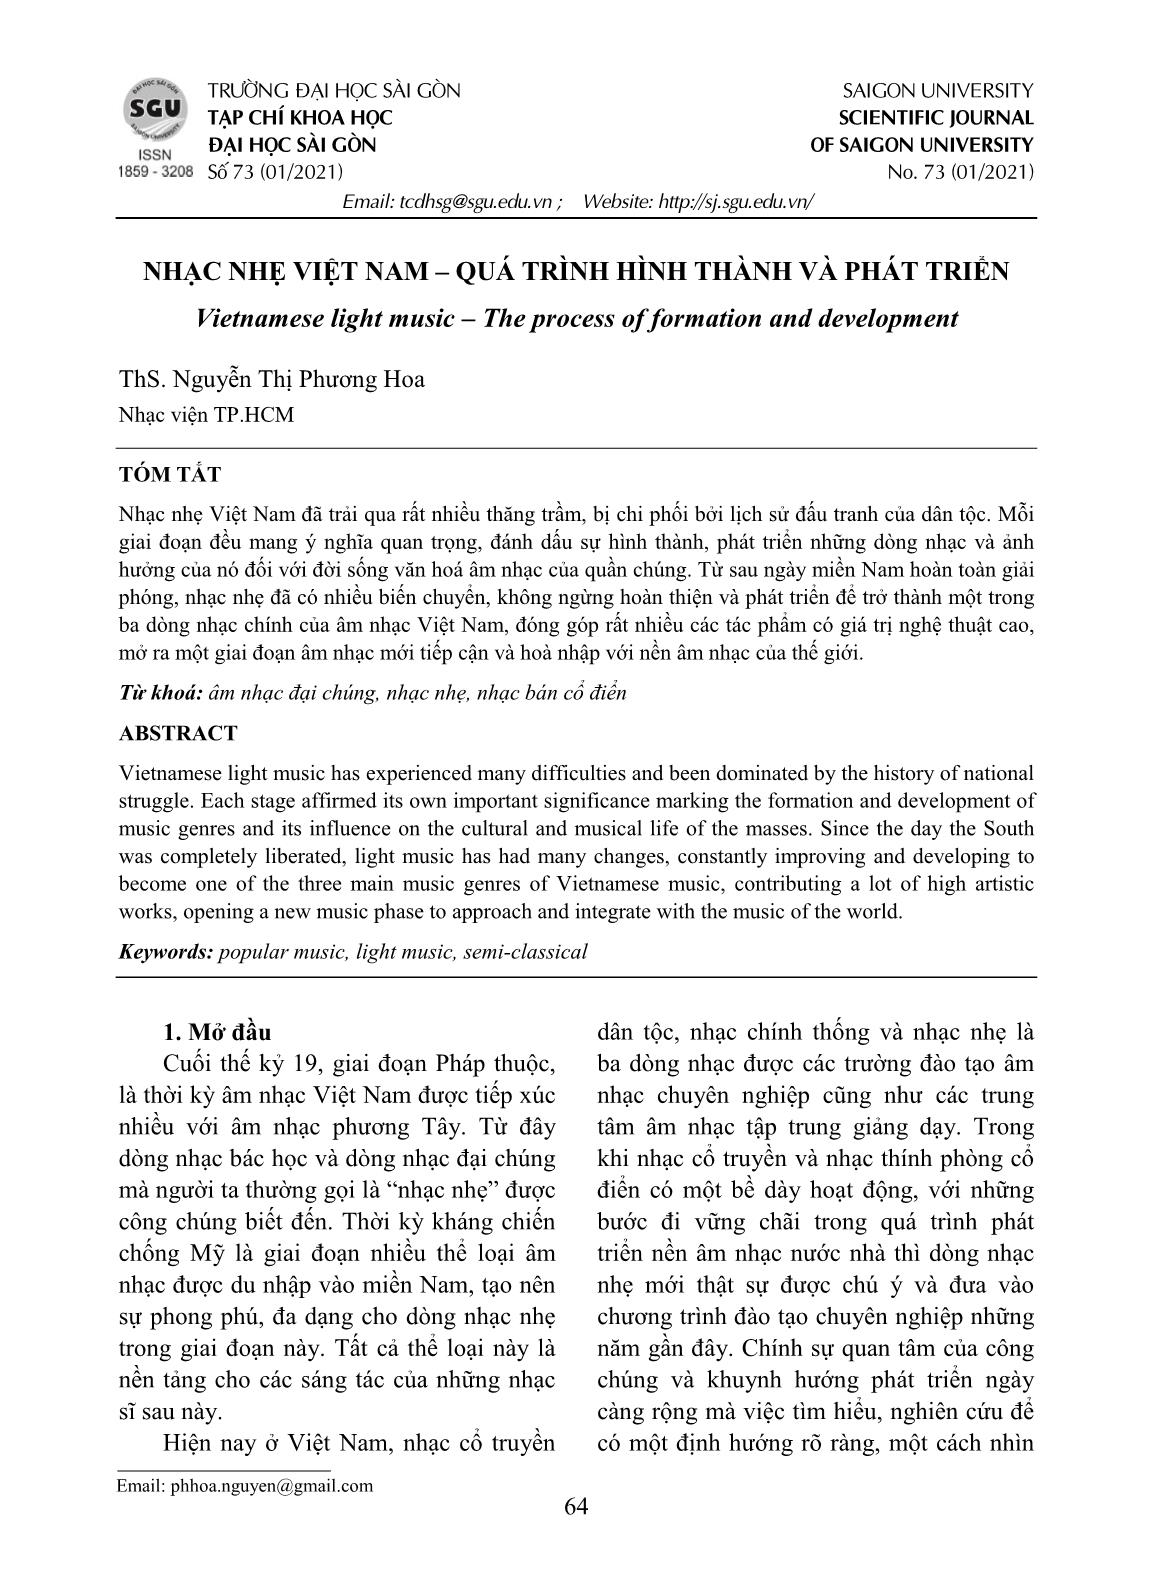 Nhạc nhẹ Việt Nam – quá trình hình thành và phát triển trang 1